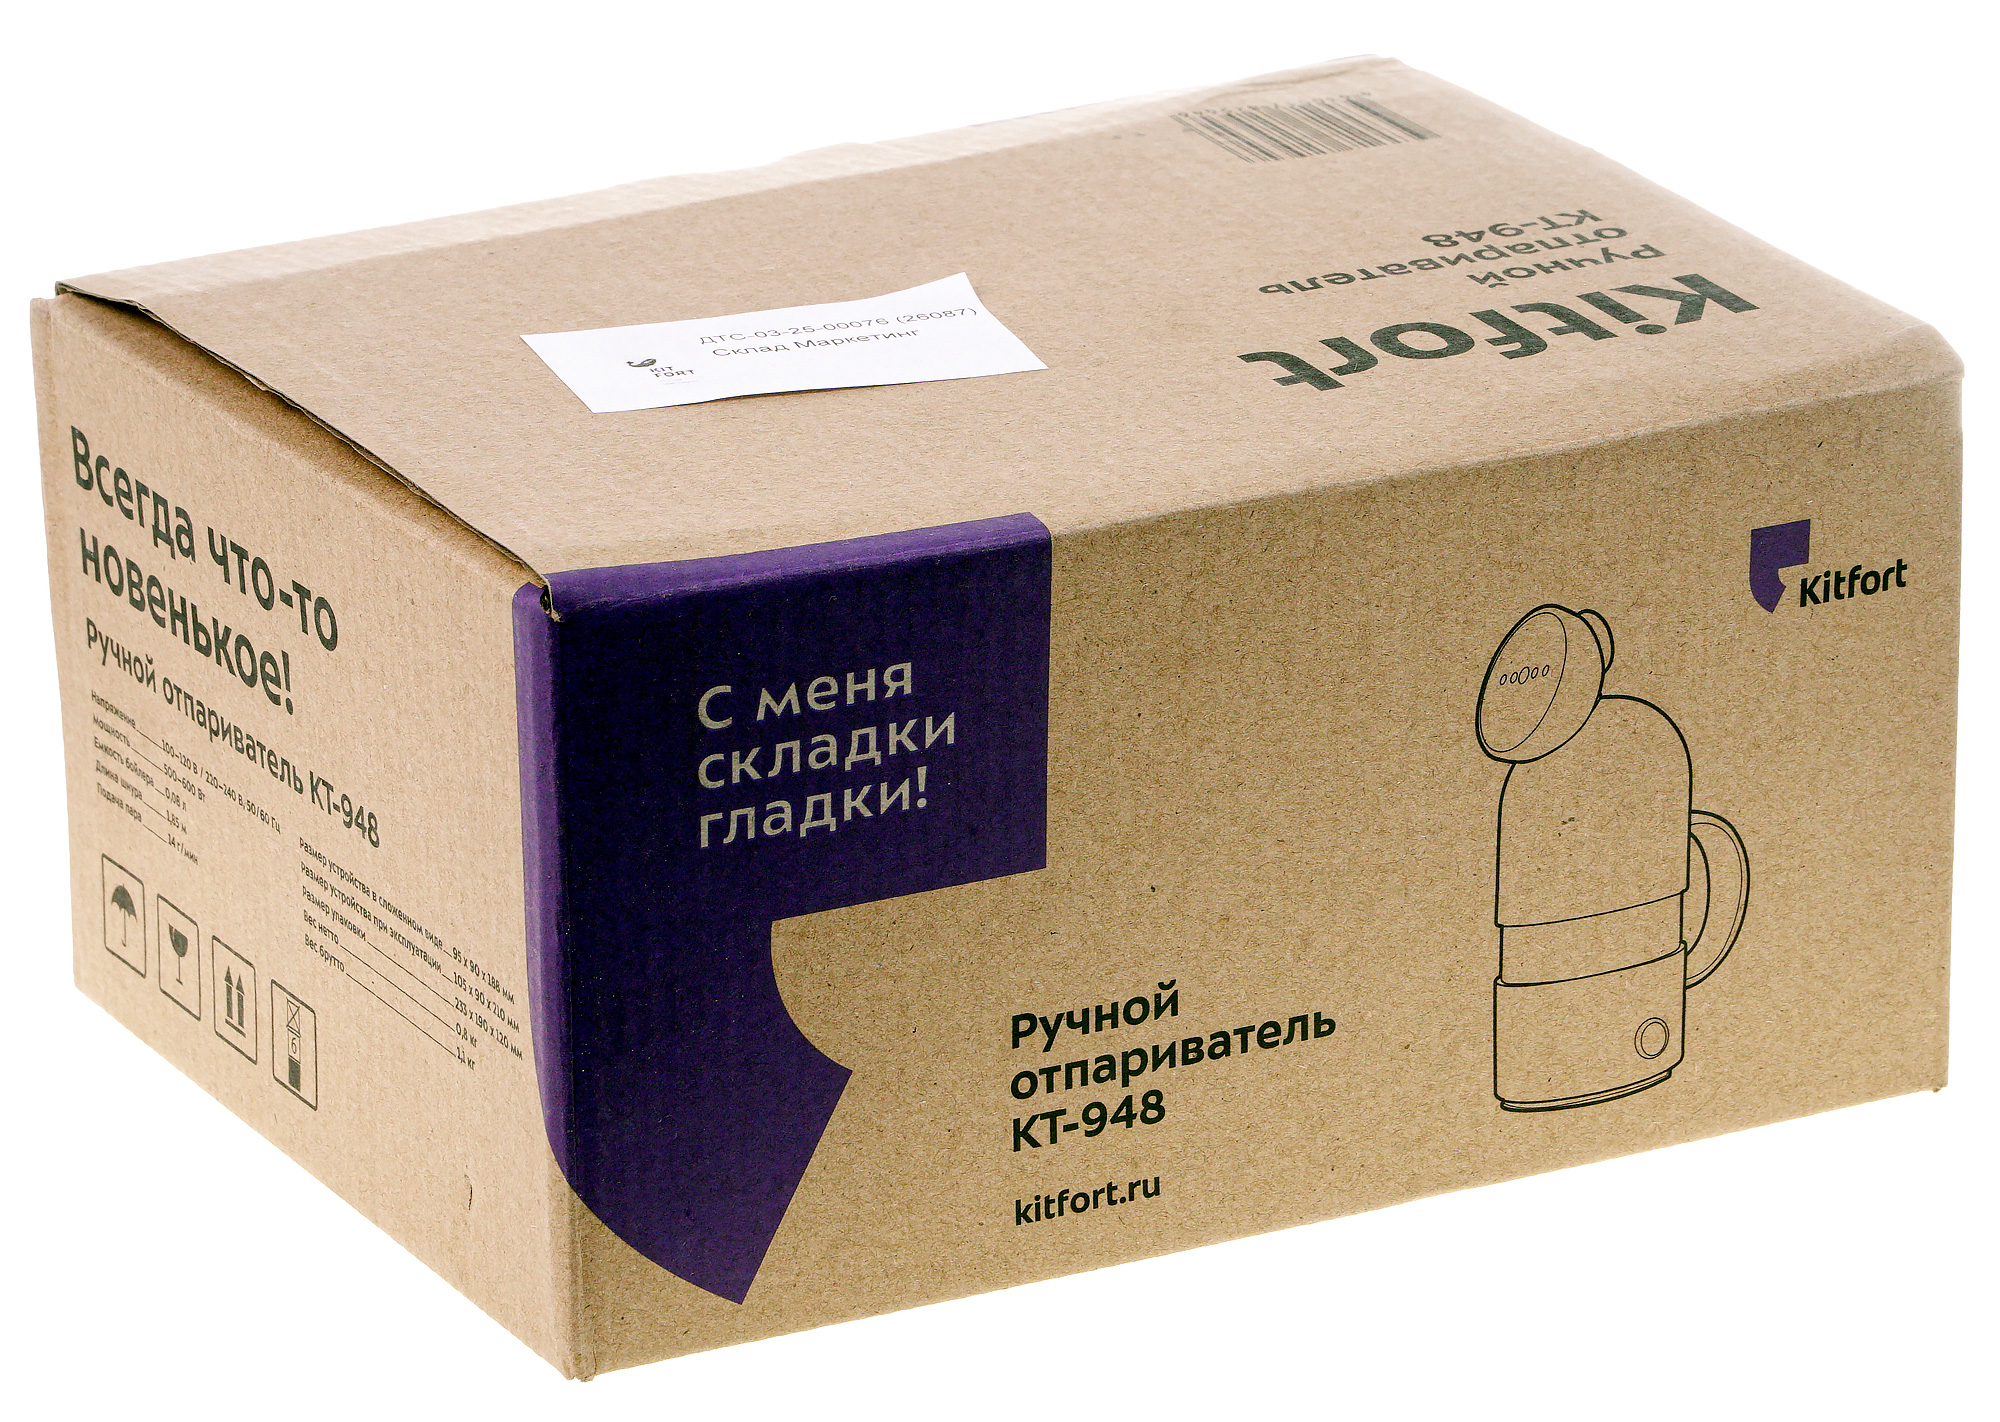 Коробка с запятыми. Kitfort коробка. Коробочка с запятыми. Упаковка бытовой техники Kitfort. Ручной отпариватель упаковка.